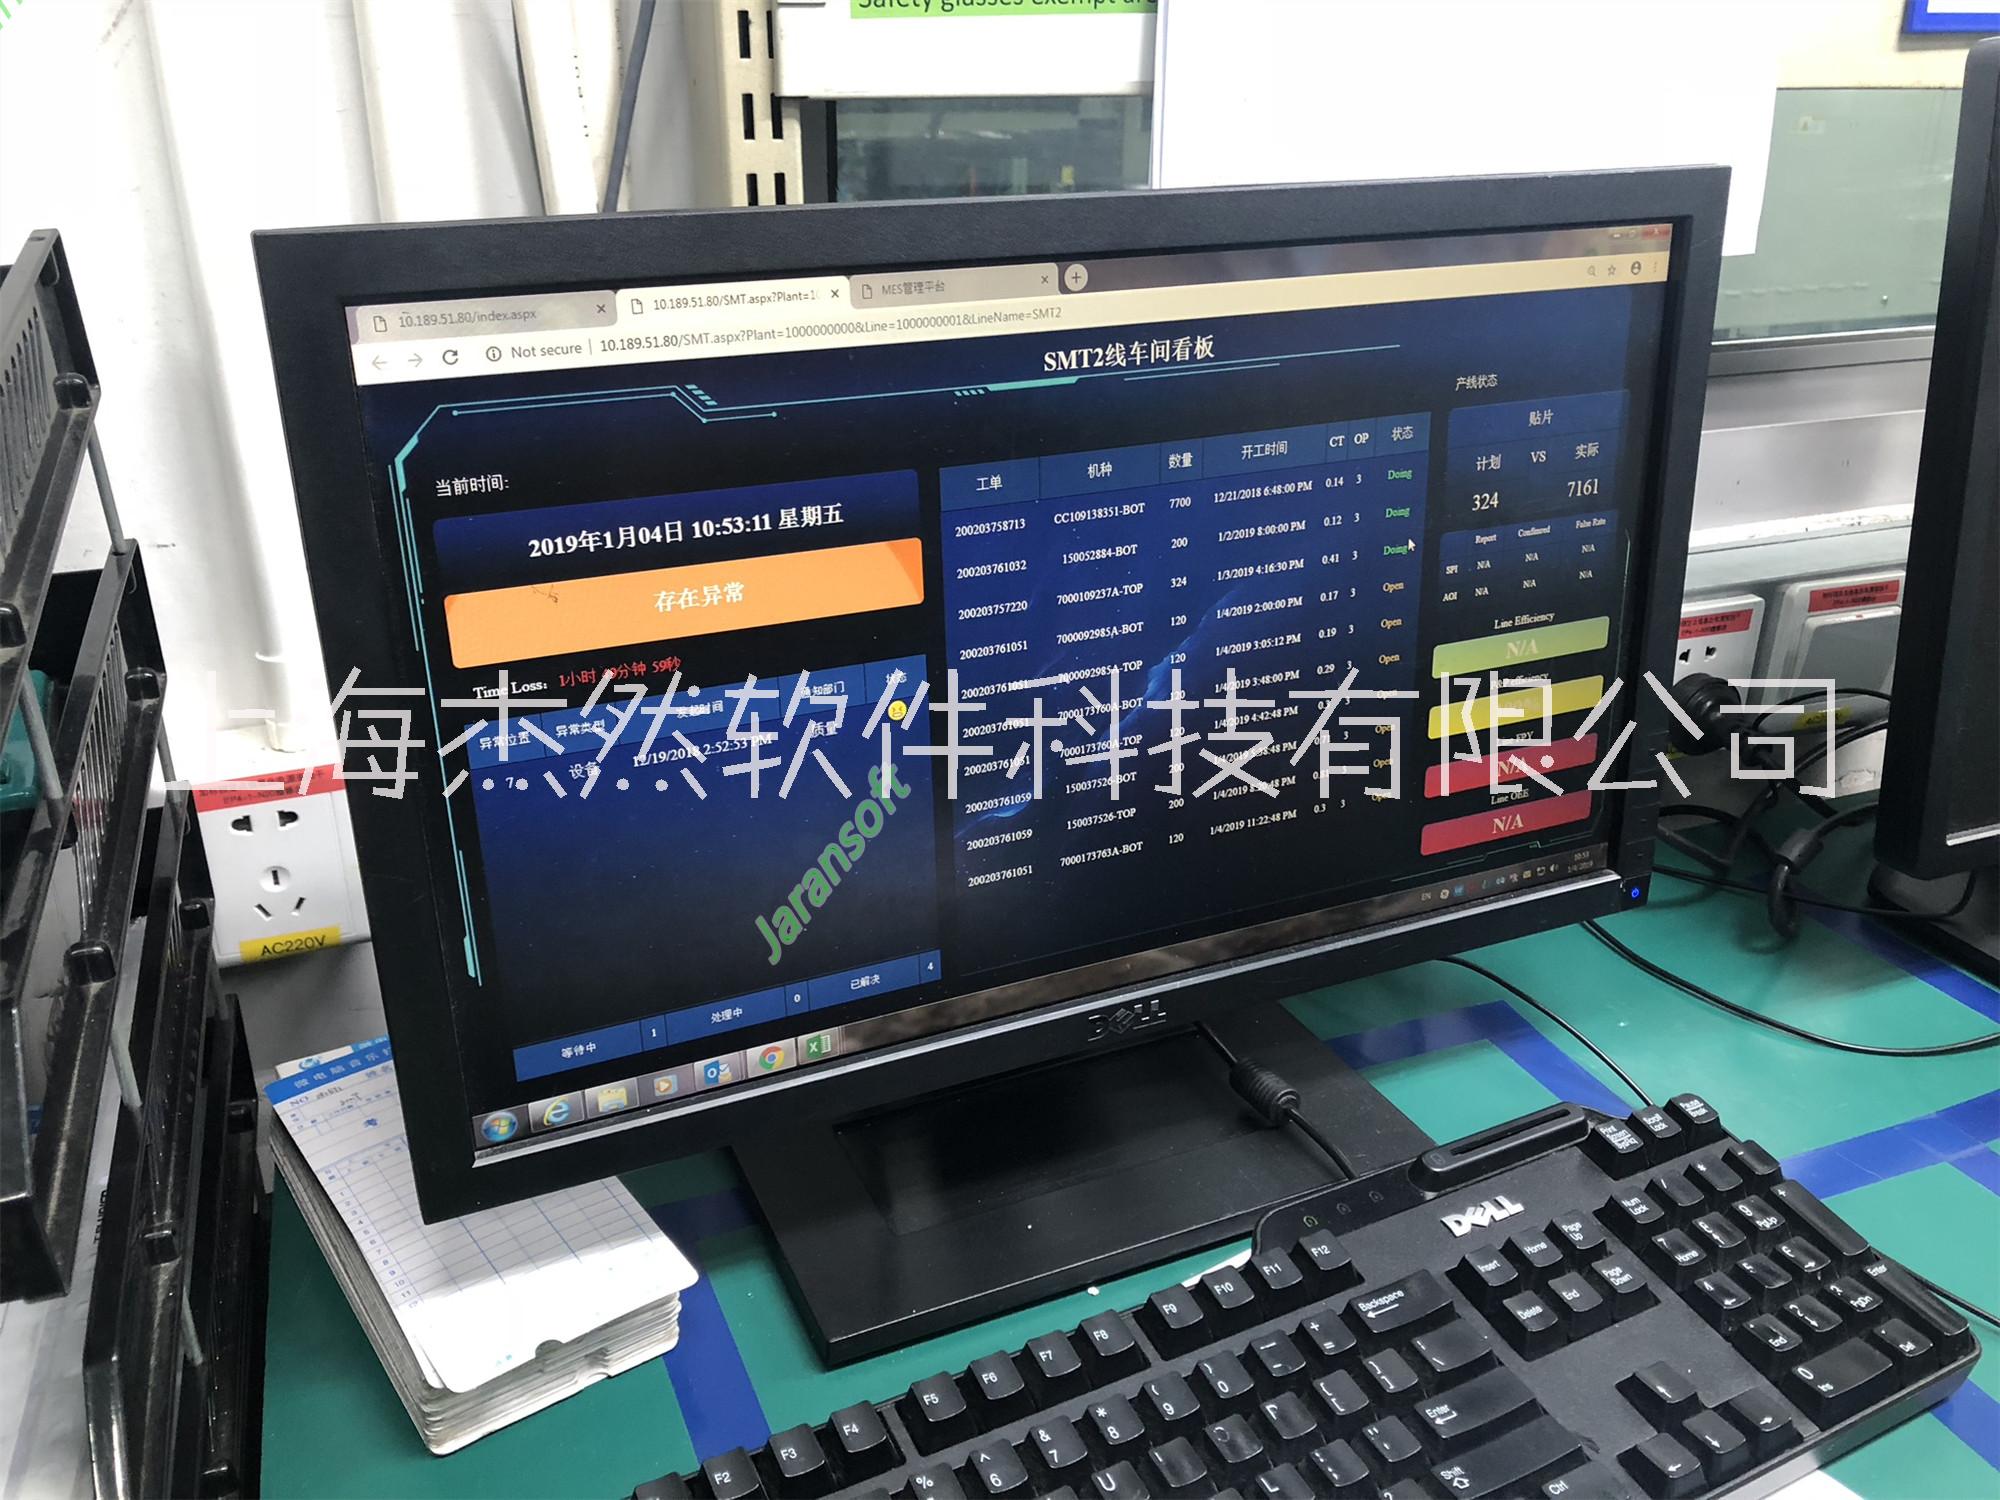 上海mes供应商 工厂生产排产软件 toc系统厂家选杰然